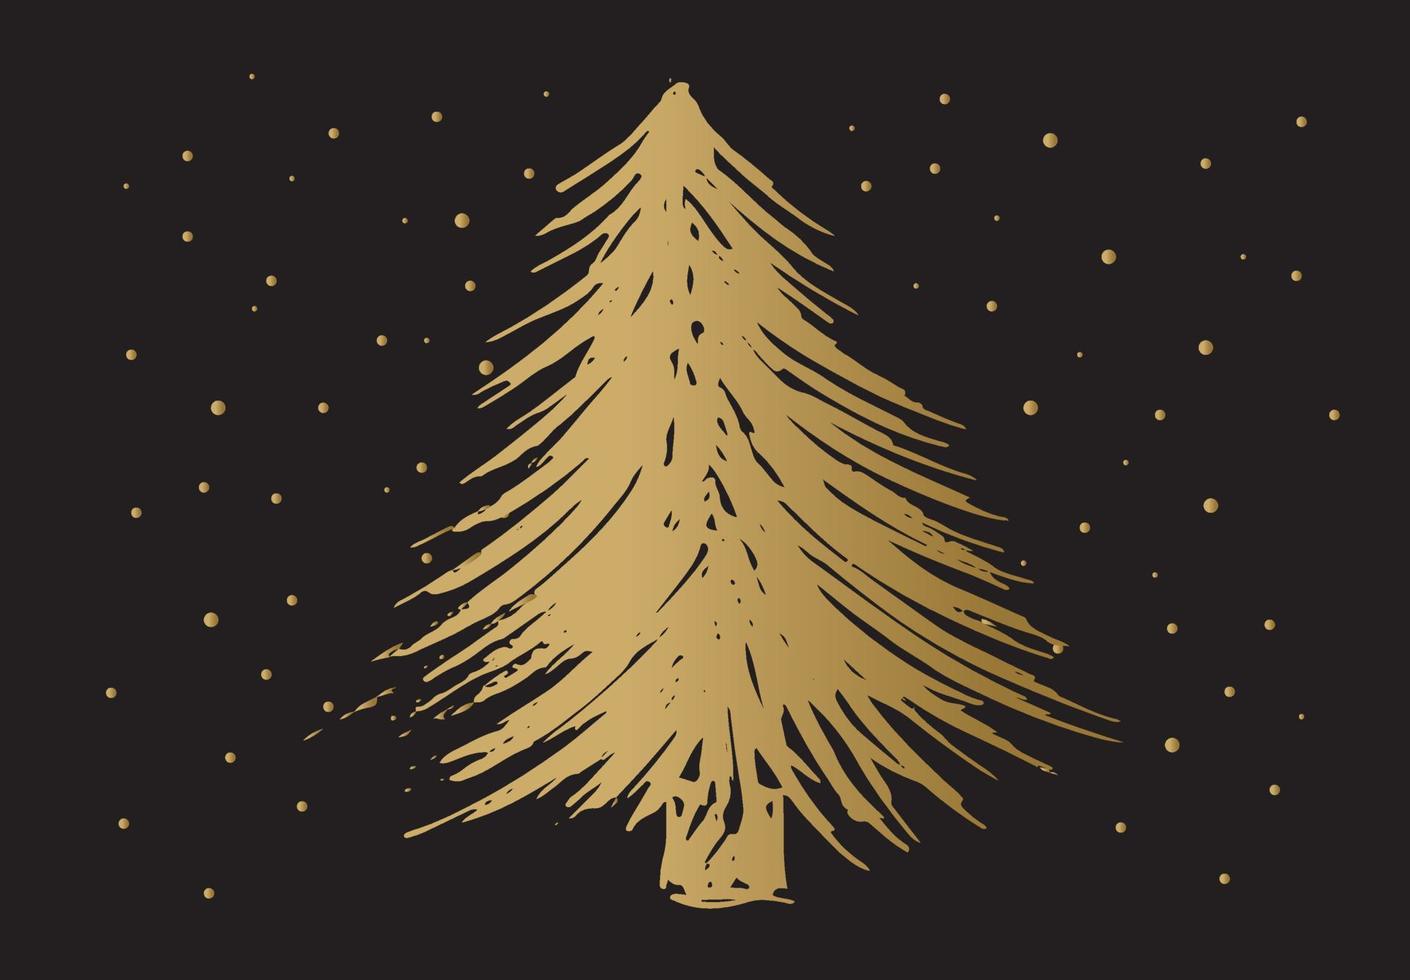 ilustraciones dibujadas a mano del árbol de navidad. vector. vector